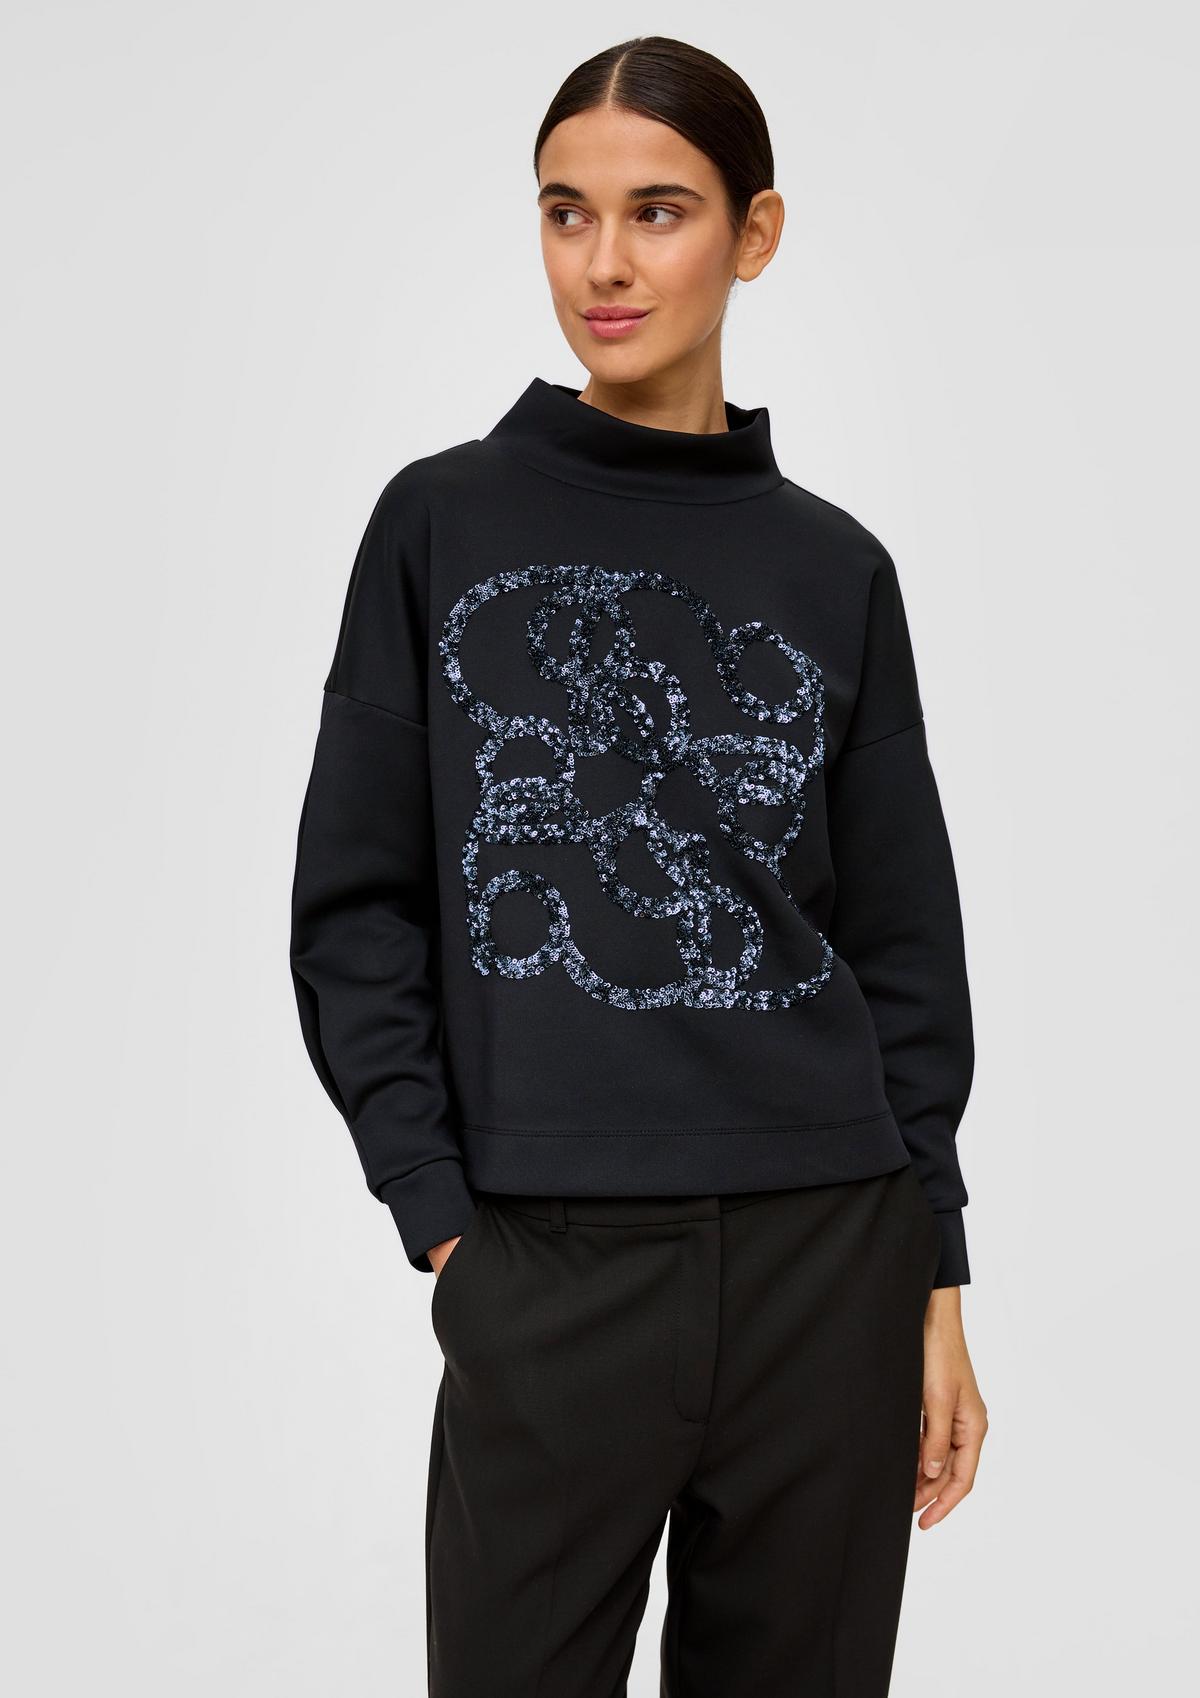 Sweatshirt mit Pailletten-Artwork - schwarz